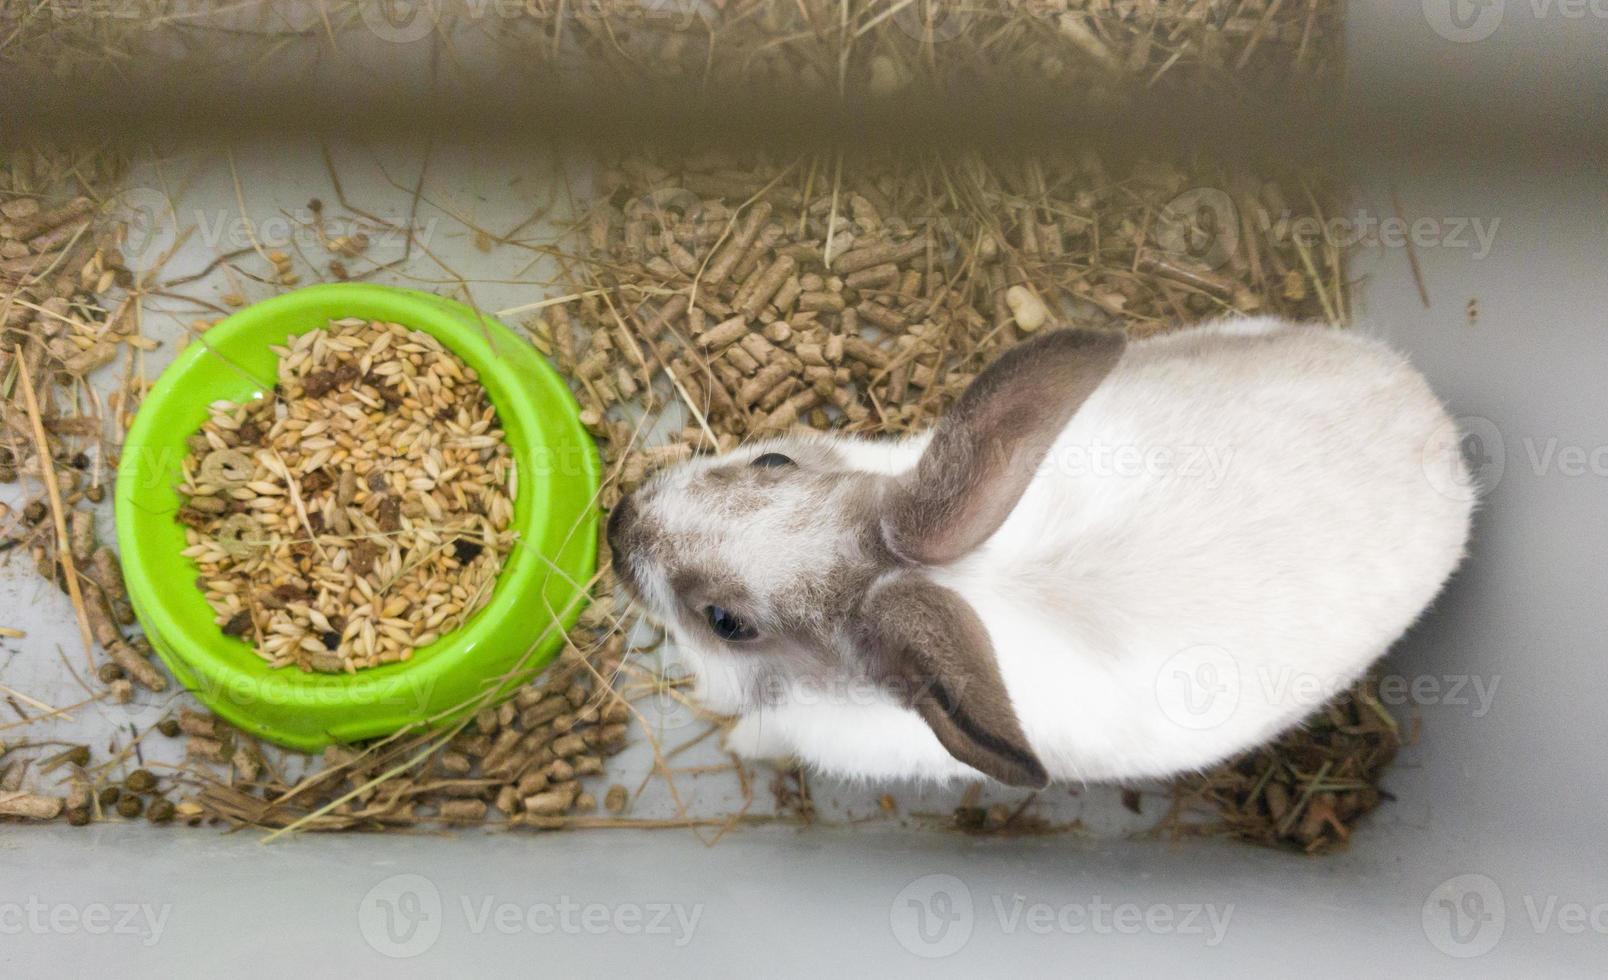 Heimdekorkaninchen in einem grauen Käfig von grauweißer Farbe. Kaninchen frisst aus einer grünen Schüssel. eine Reihe von Fotos eines süßen und flauschigen Nagetiers. kleines osterferiensymbol, osterhase